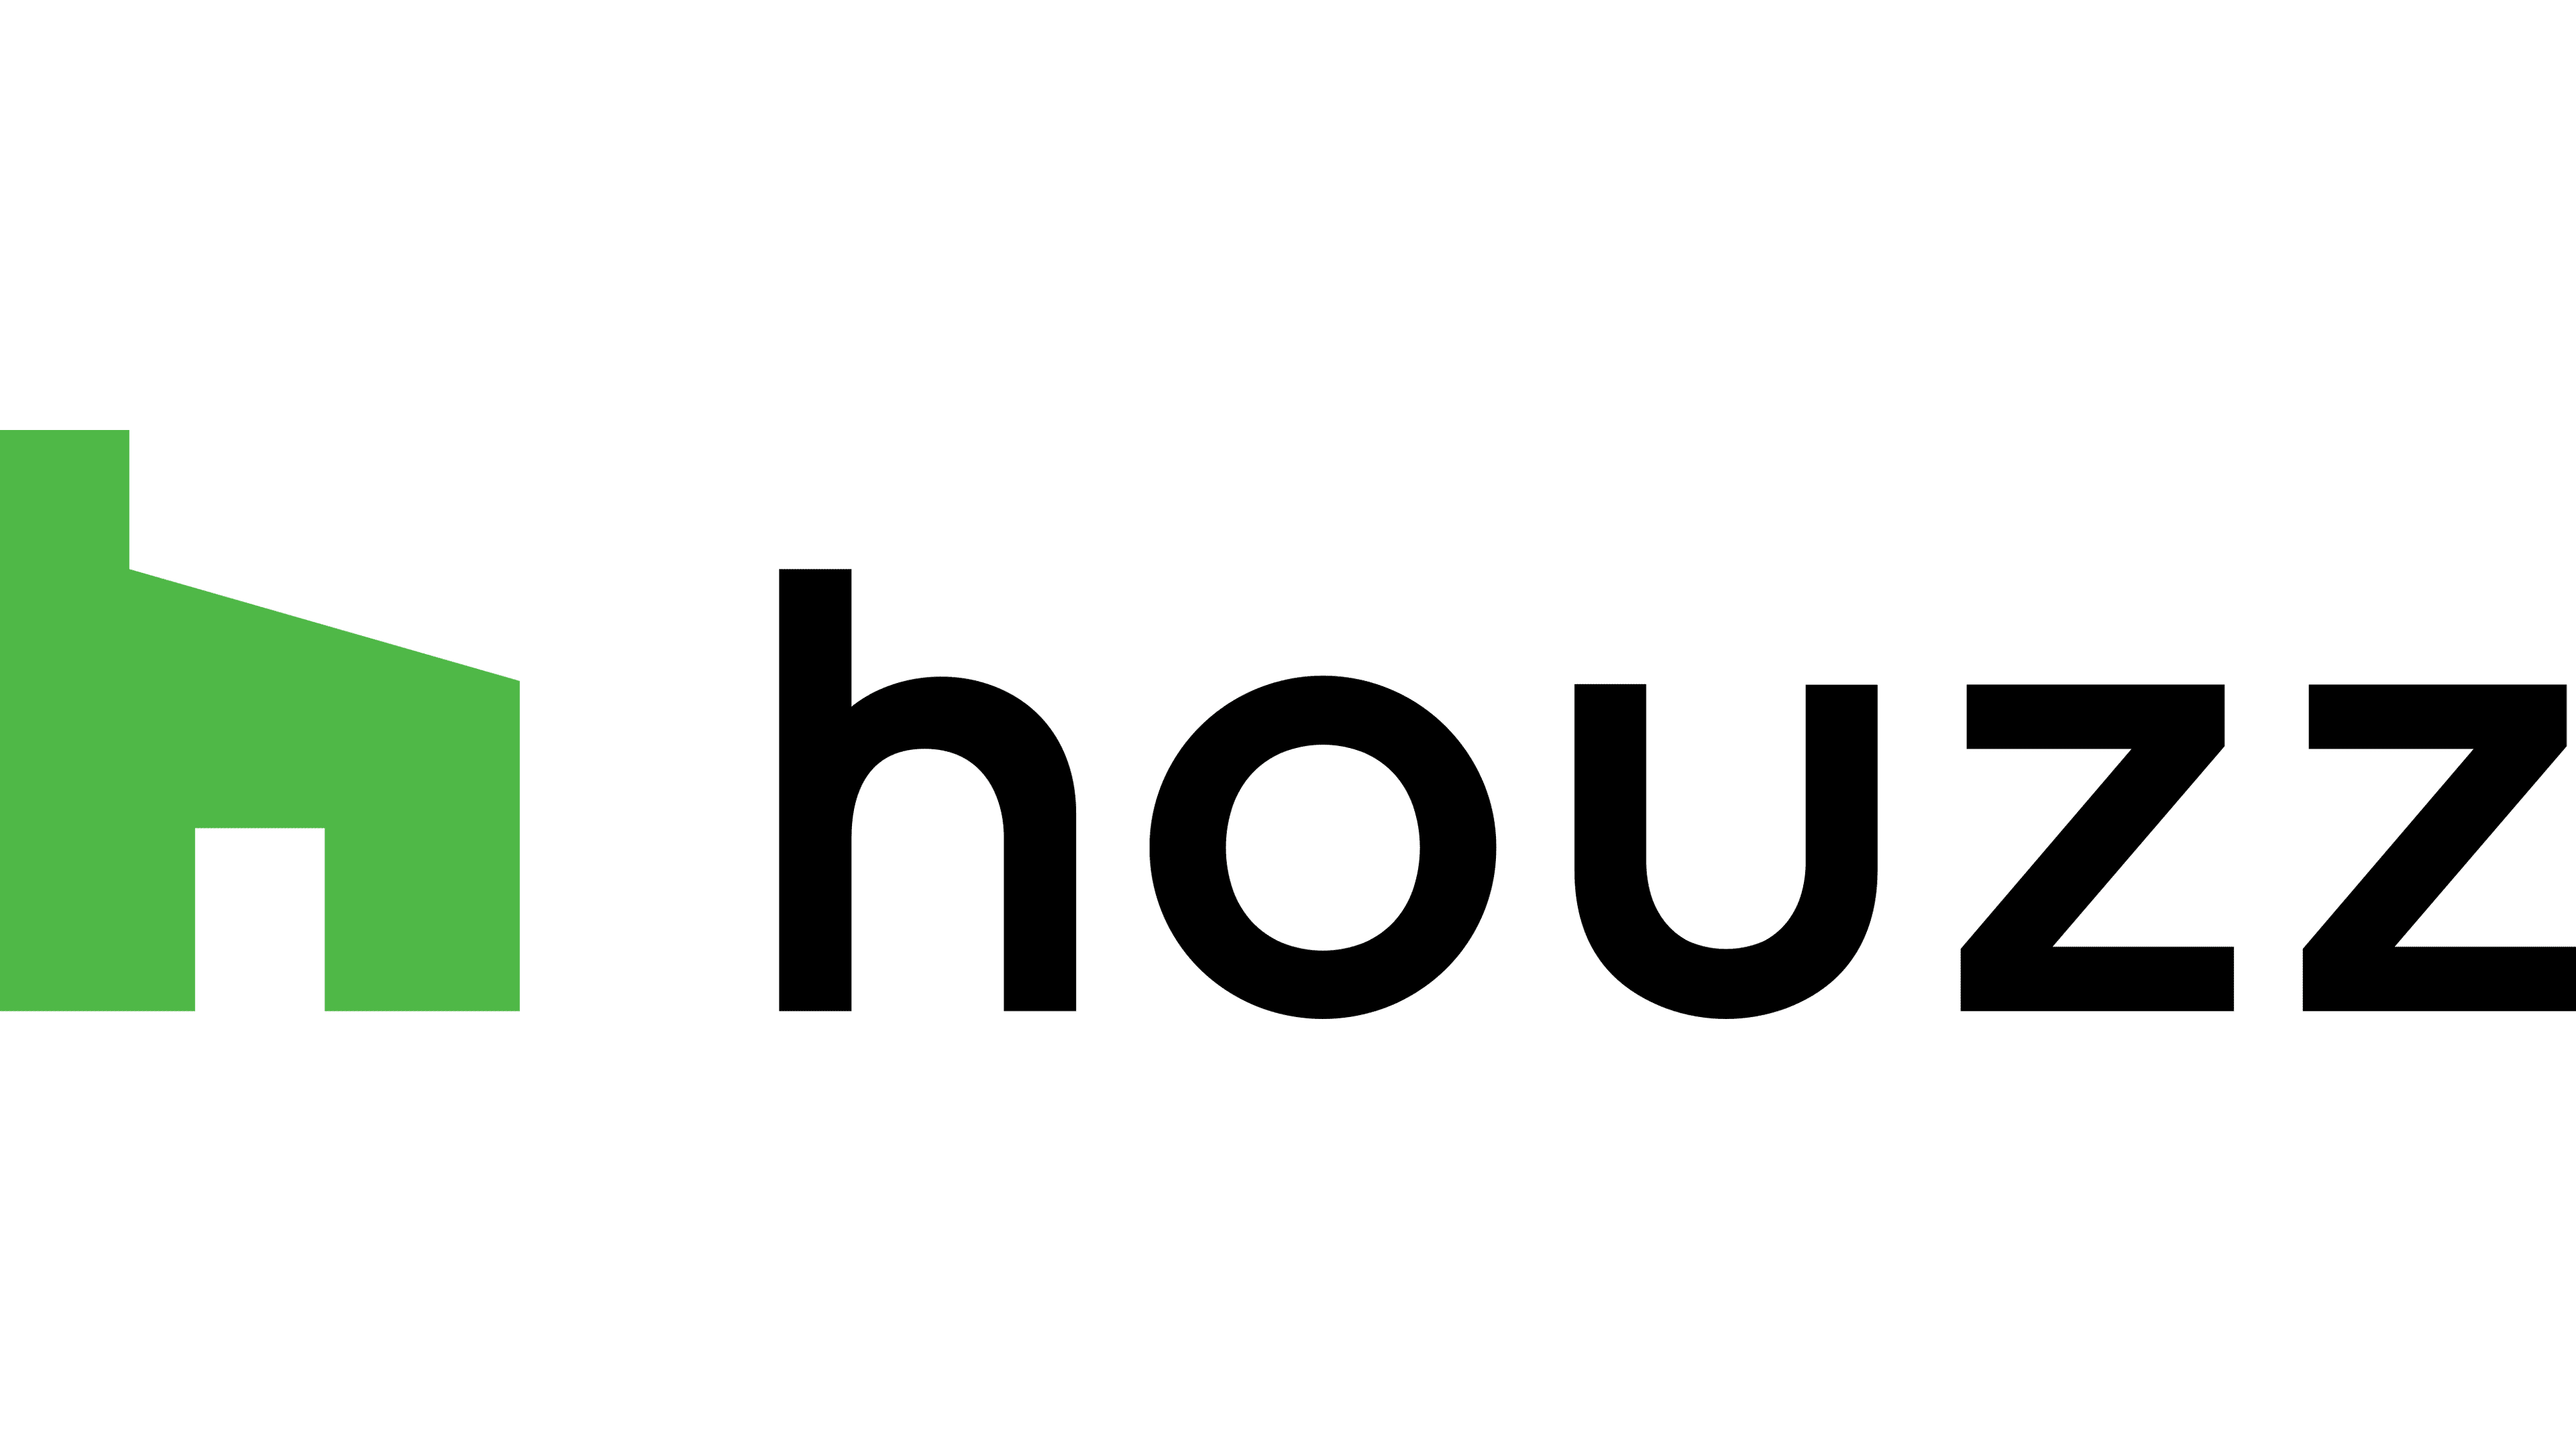 Houzz-logo